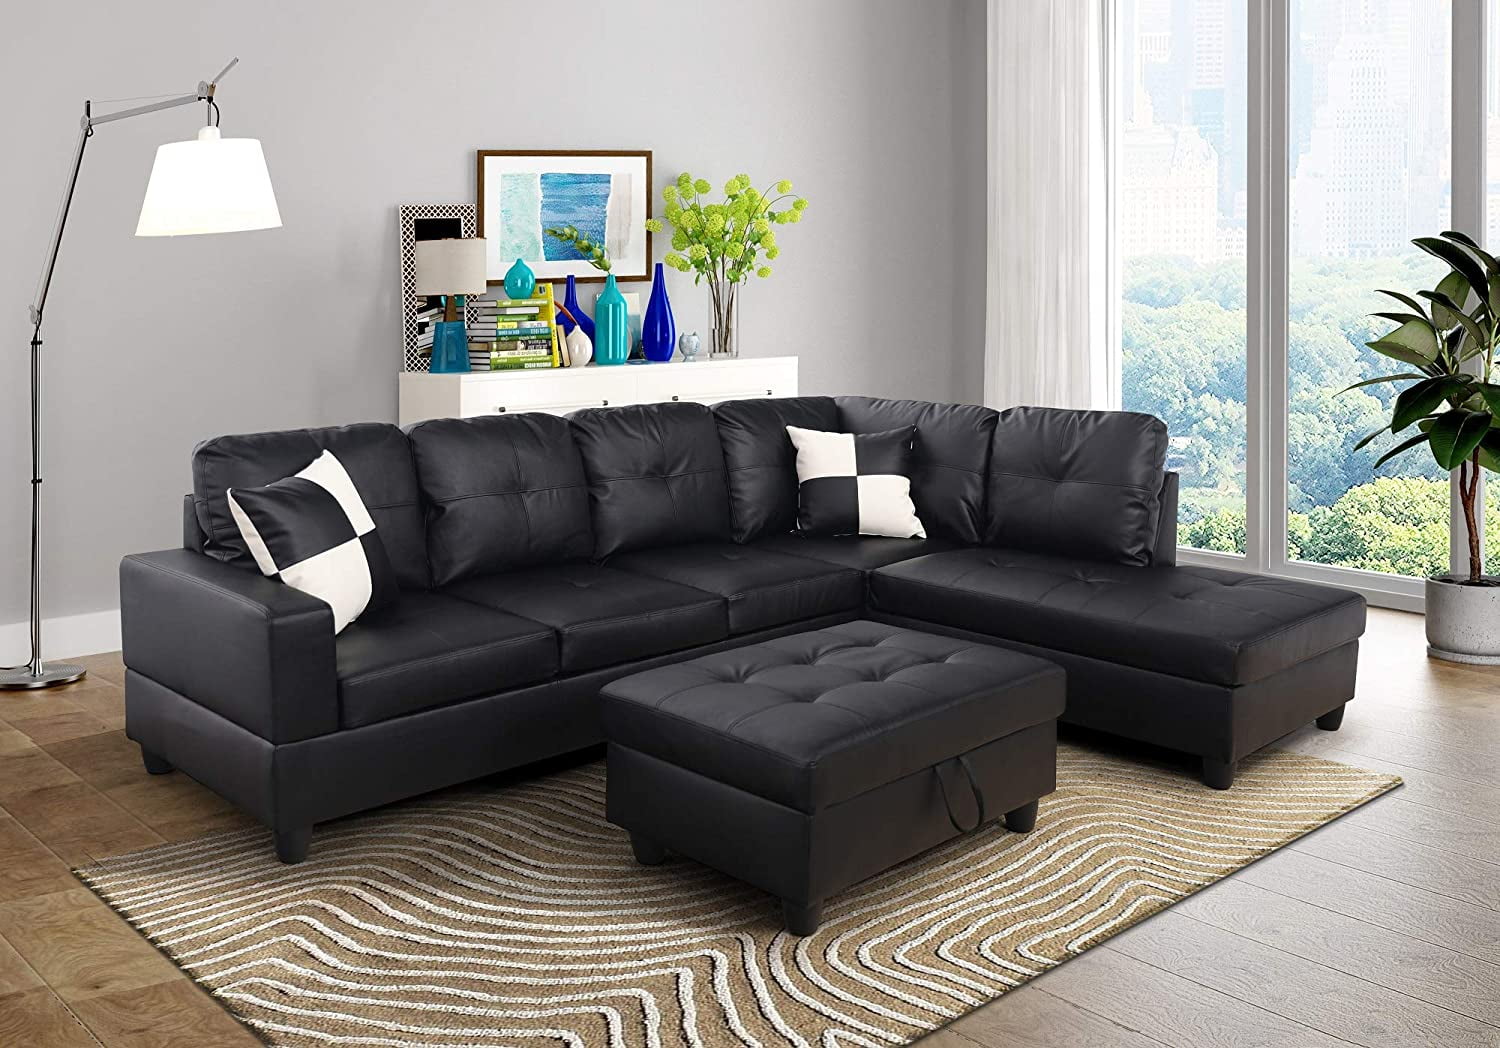 large round leather sofa